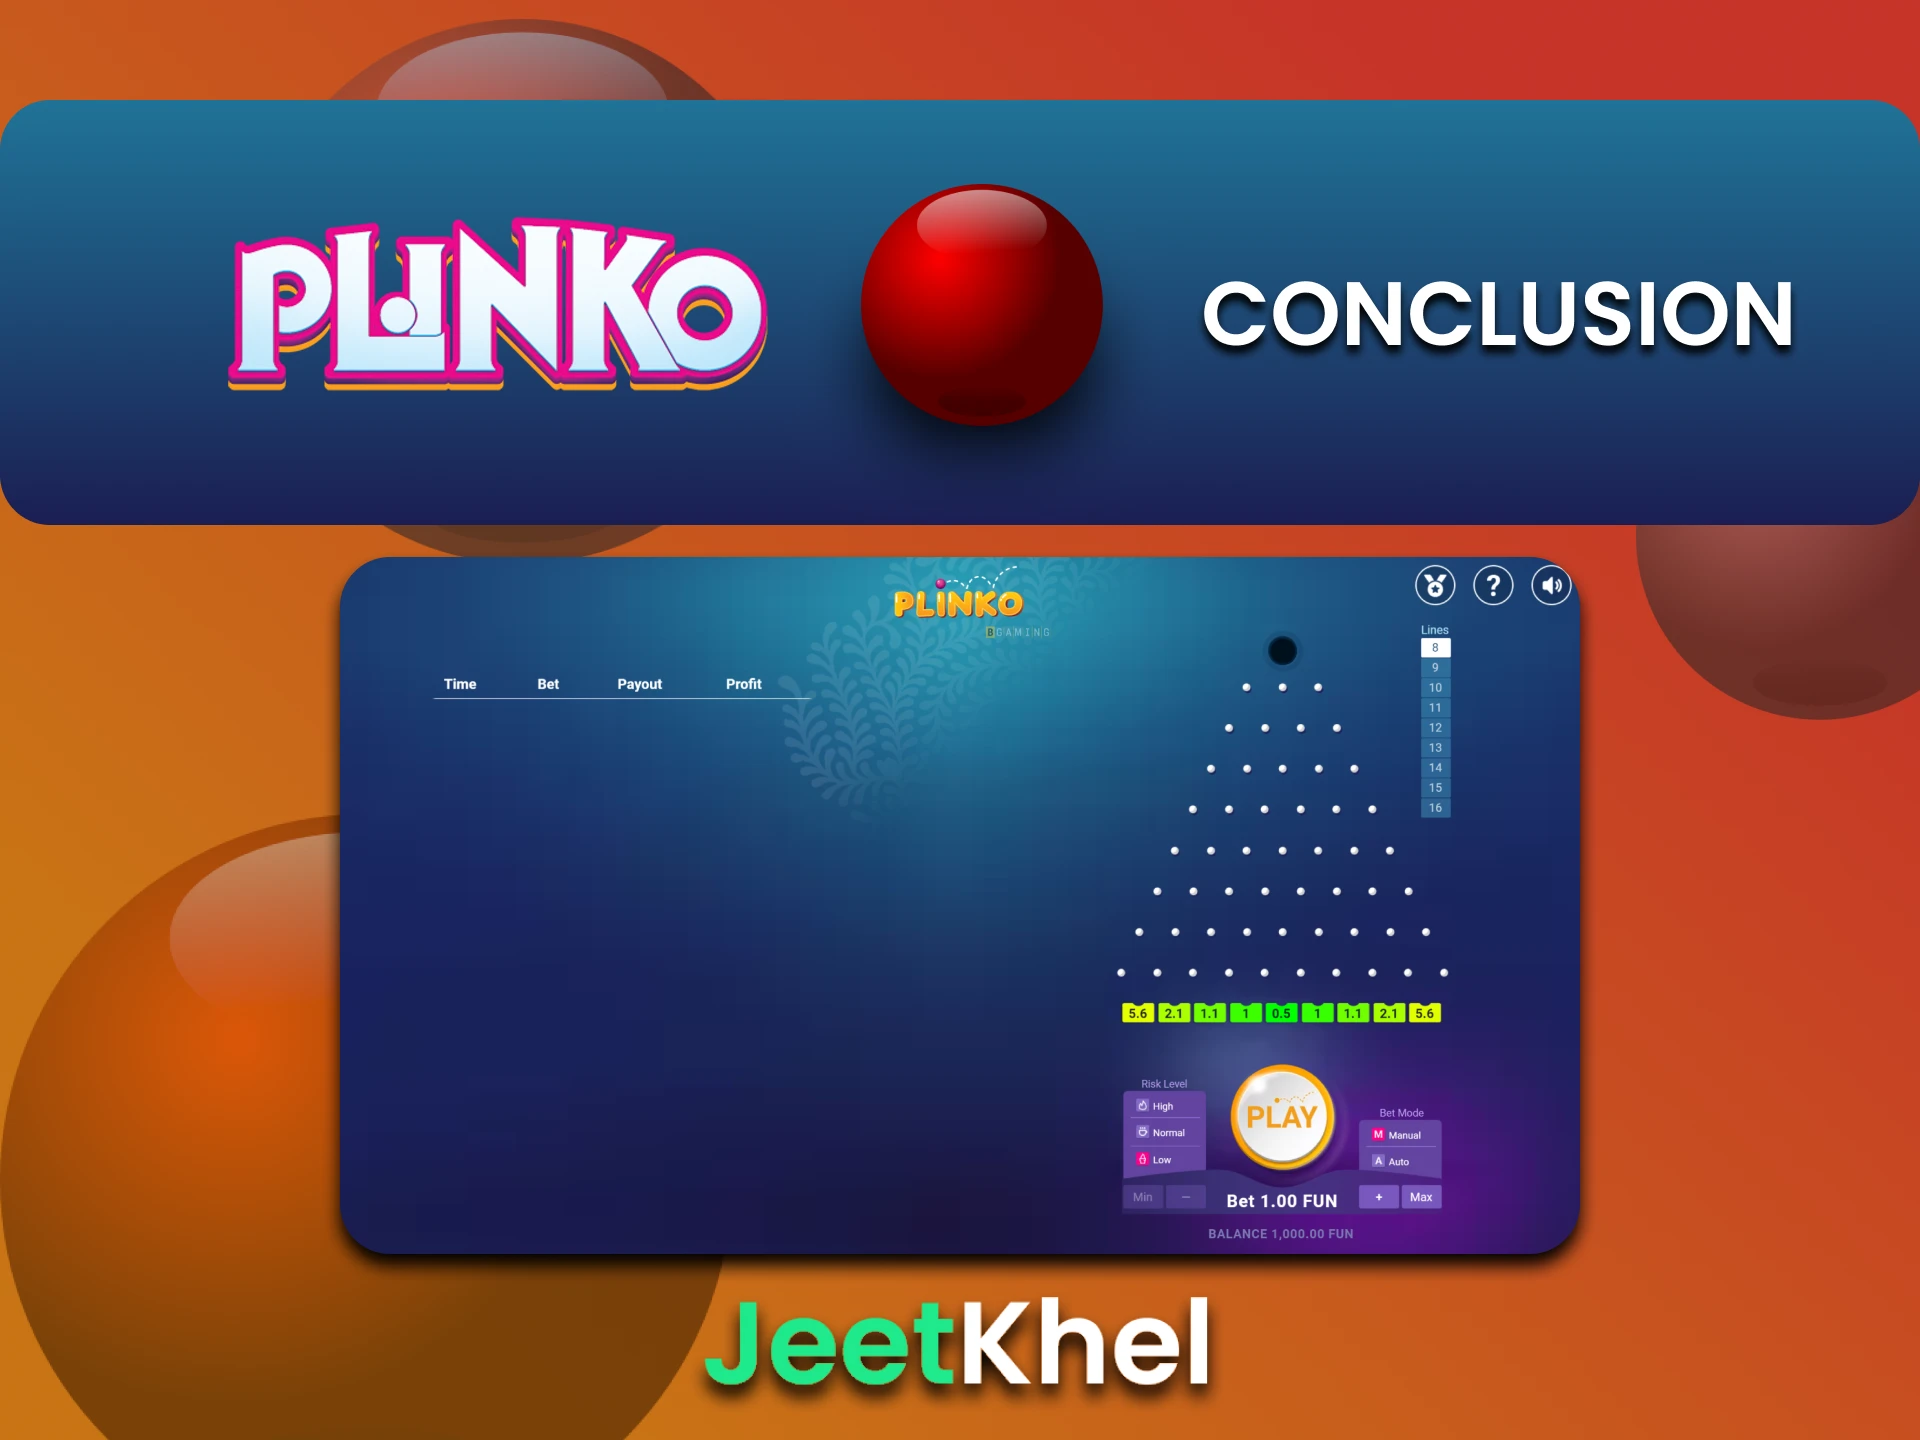 JeetKhel is ideal for playing Plinko.